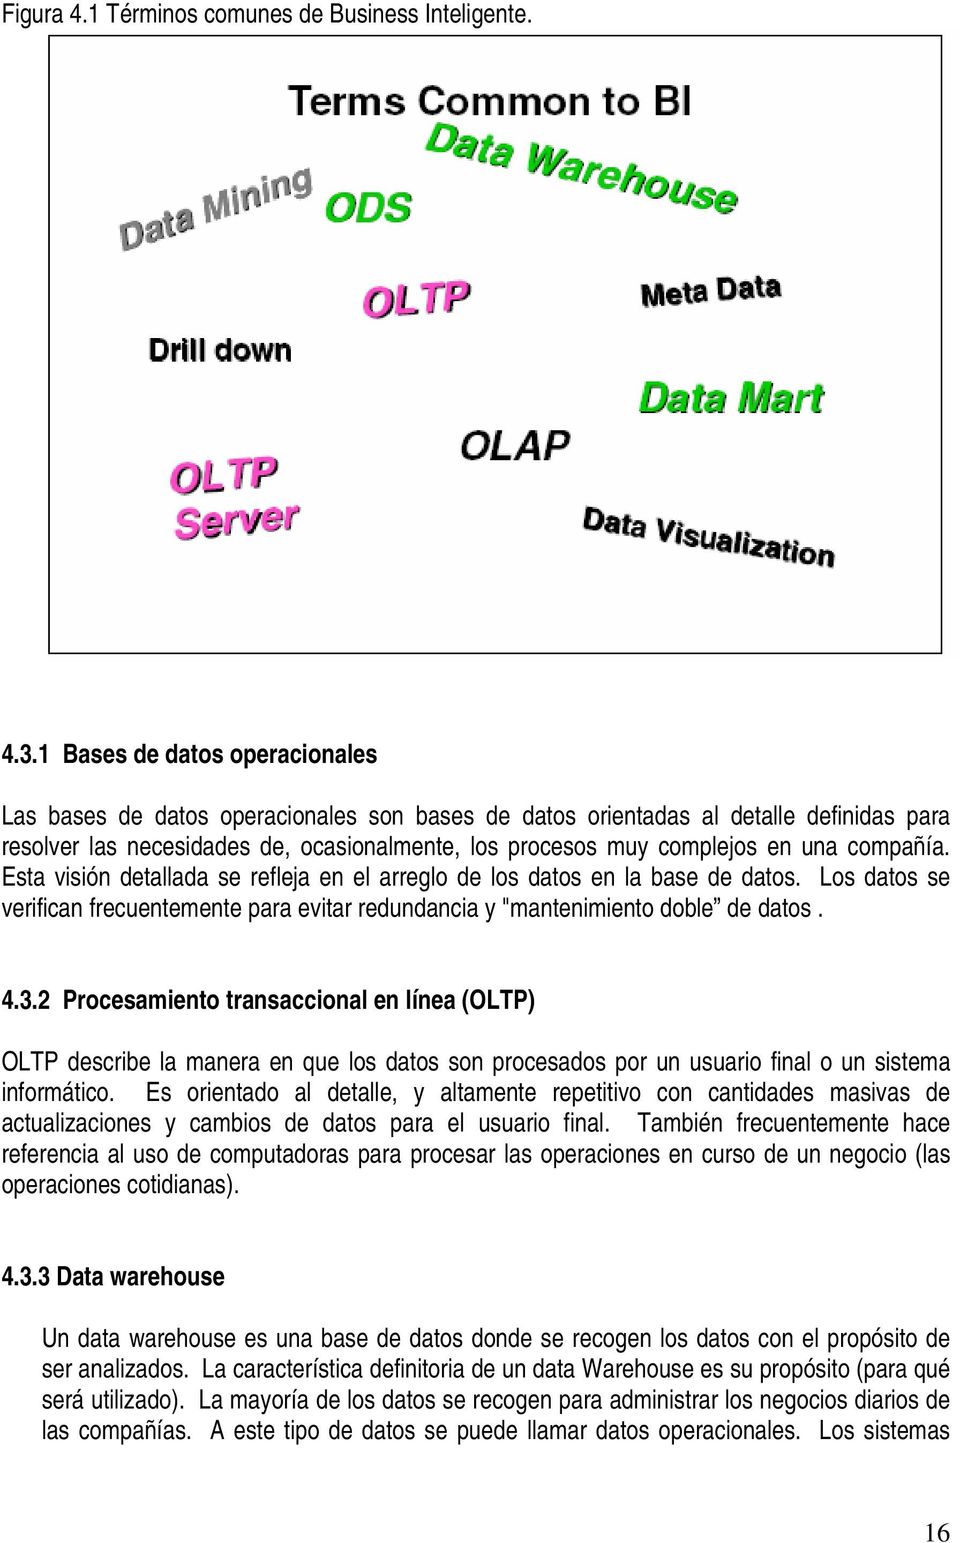 compañía. Esta visión detallada se refleja en el arreglo de los datos en la base de datos. Los datos se verifican frecuentemente para evitar redundancia y "mantenimiento doble de datos. 4.3.